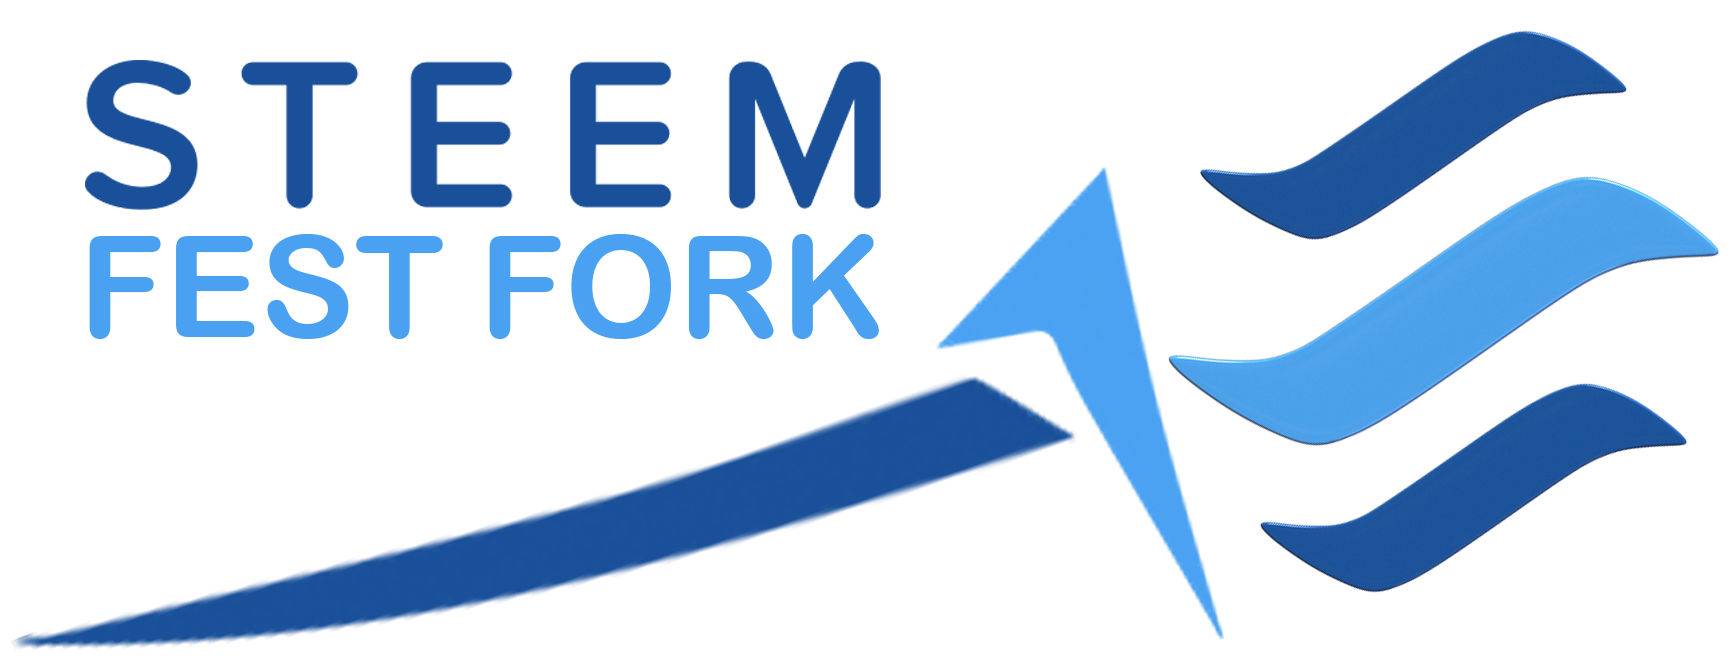 steemit-fest-fork-logo.png